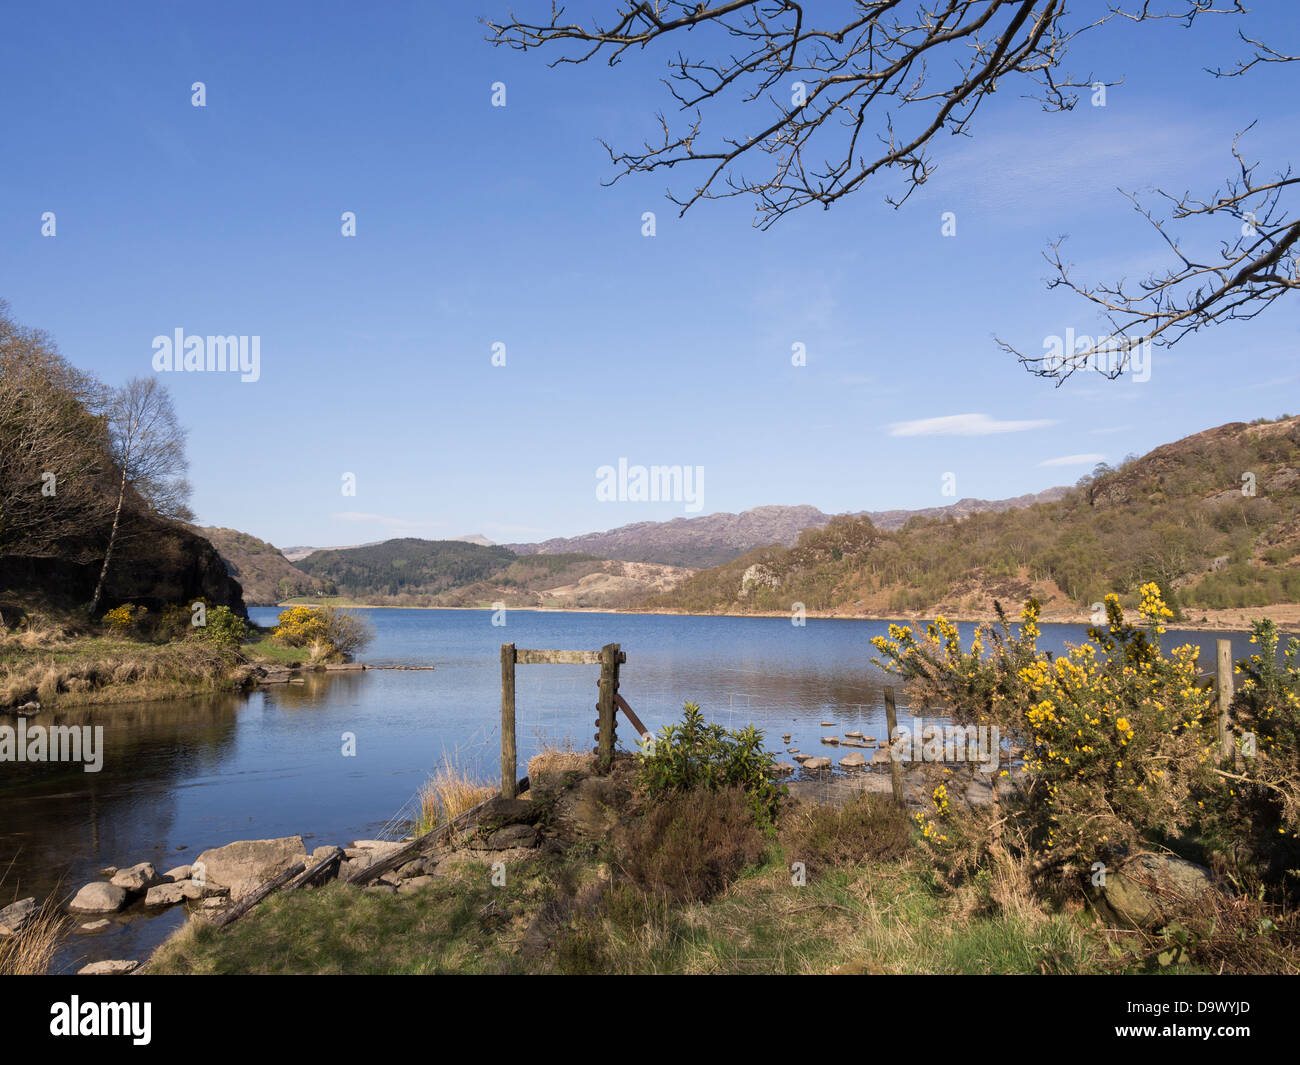 Llyn Dinas lago da Afon Glaslyn fiume di Nant Gwynant valle nelle colline del Parco Nazionale di Snowdonia, Gwynedd, Galles del Nord, Regno Unito Foto Stock